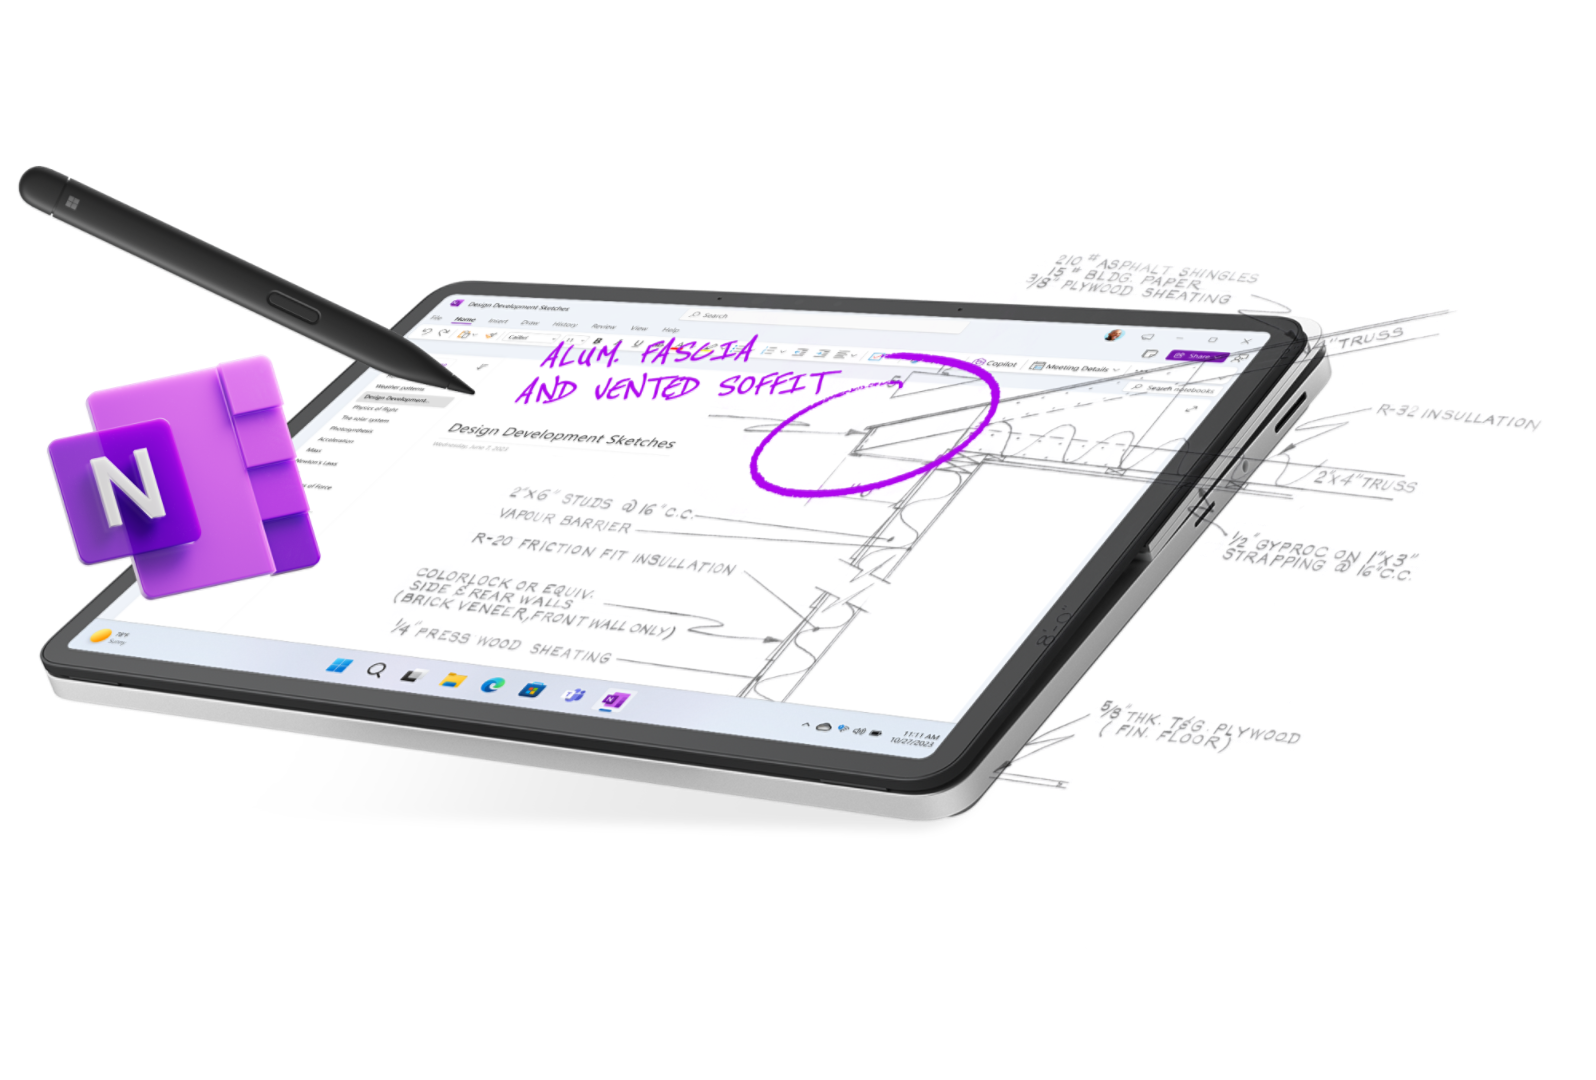 デジタルペン、手書きのメモ、OneNote アイコンがデバイスの画面から飛び出している様子を表示したタブレットモードの Surface Laptop Studio 2。